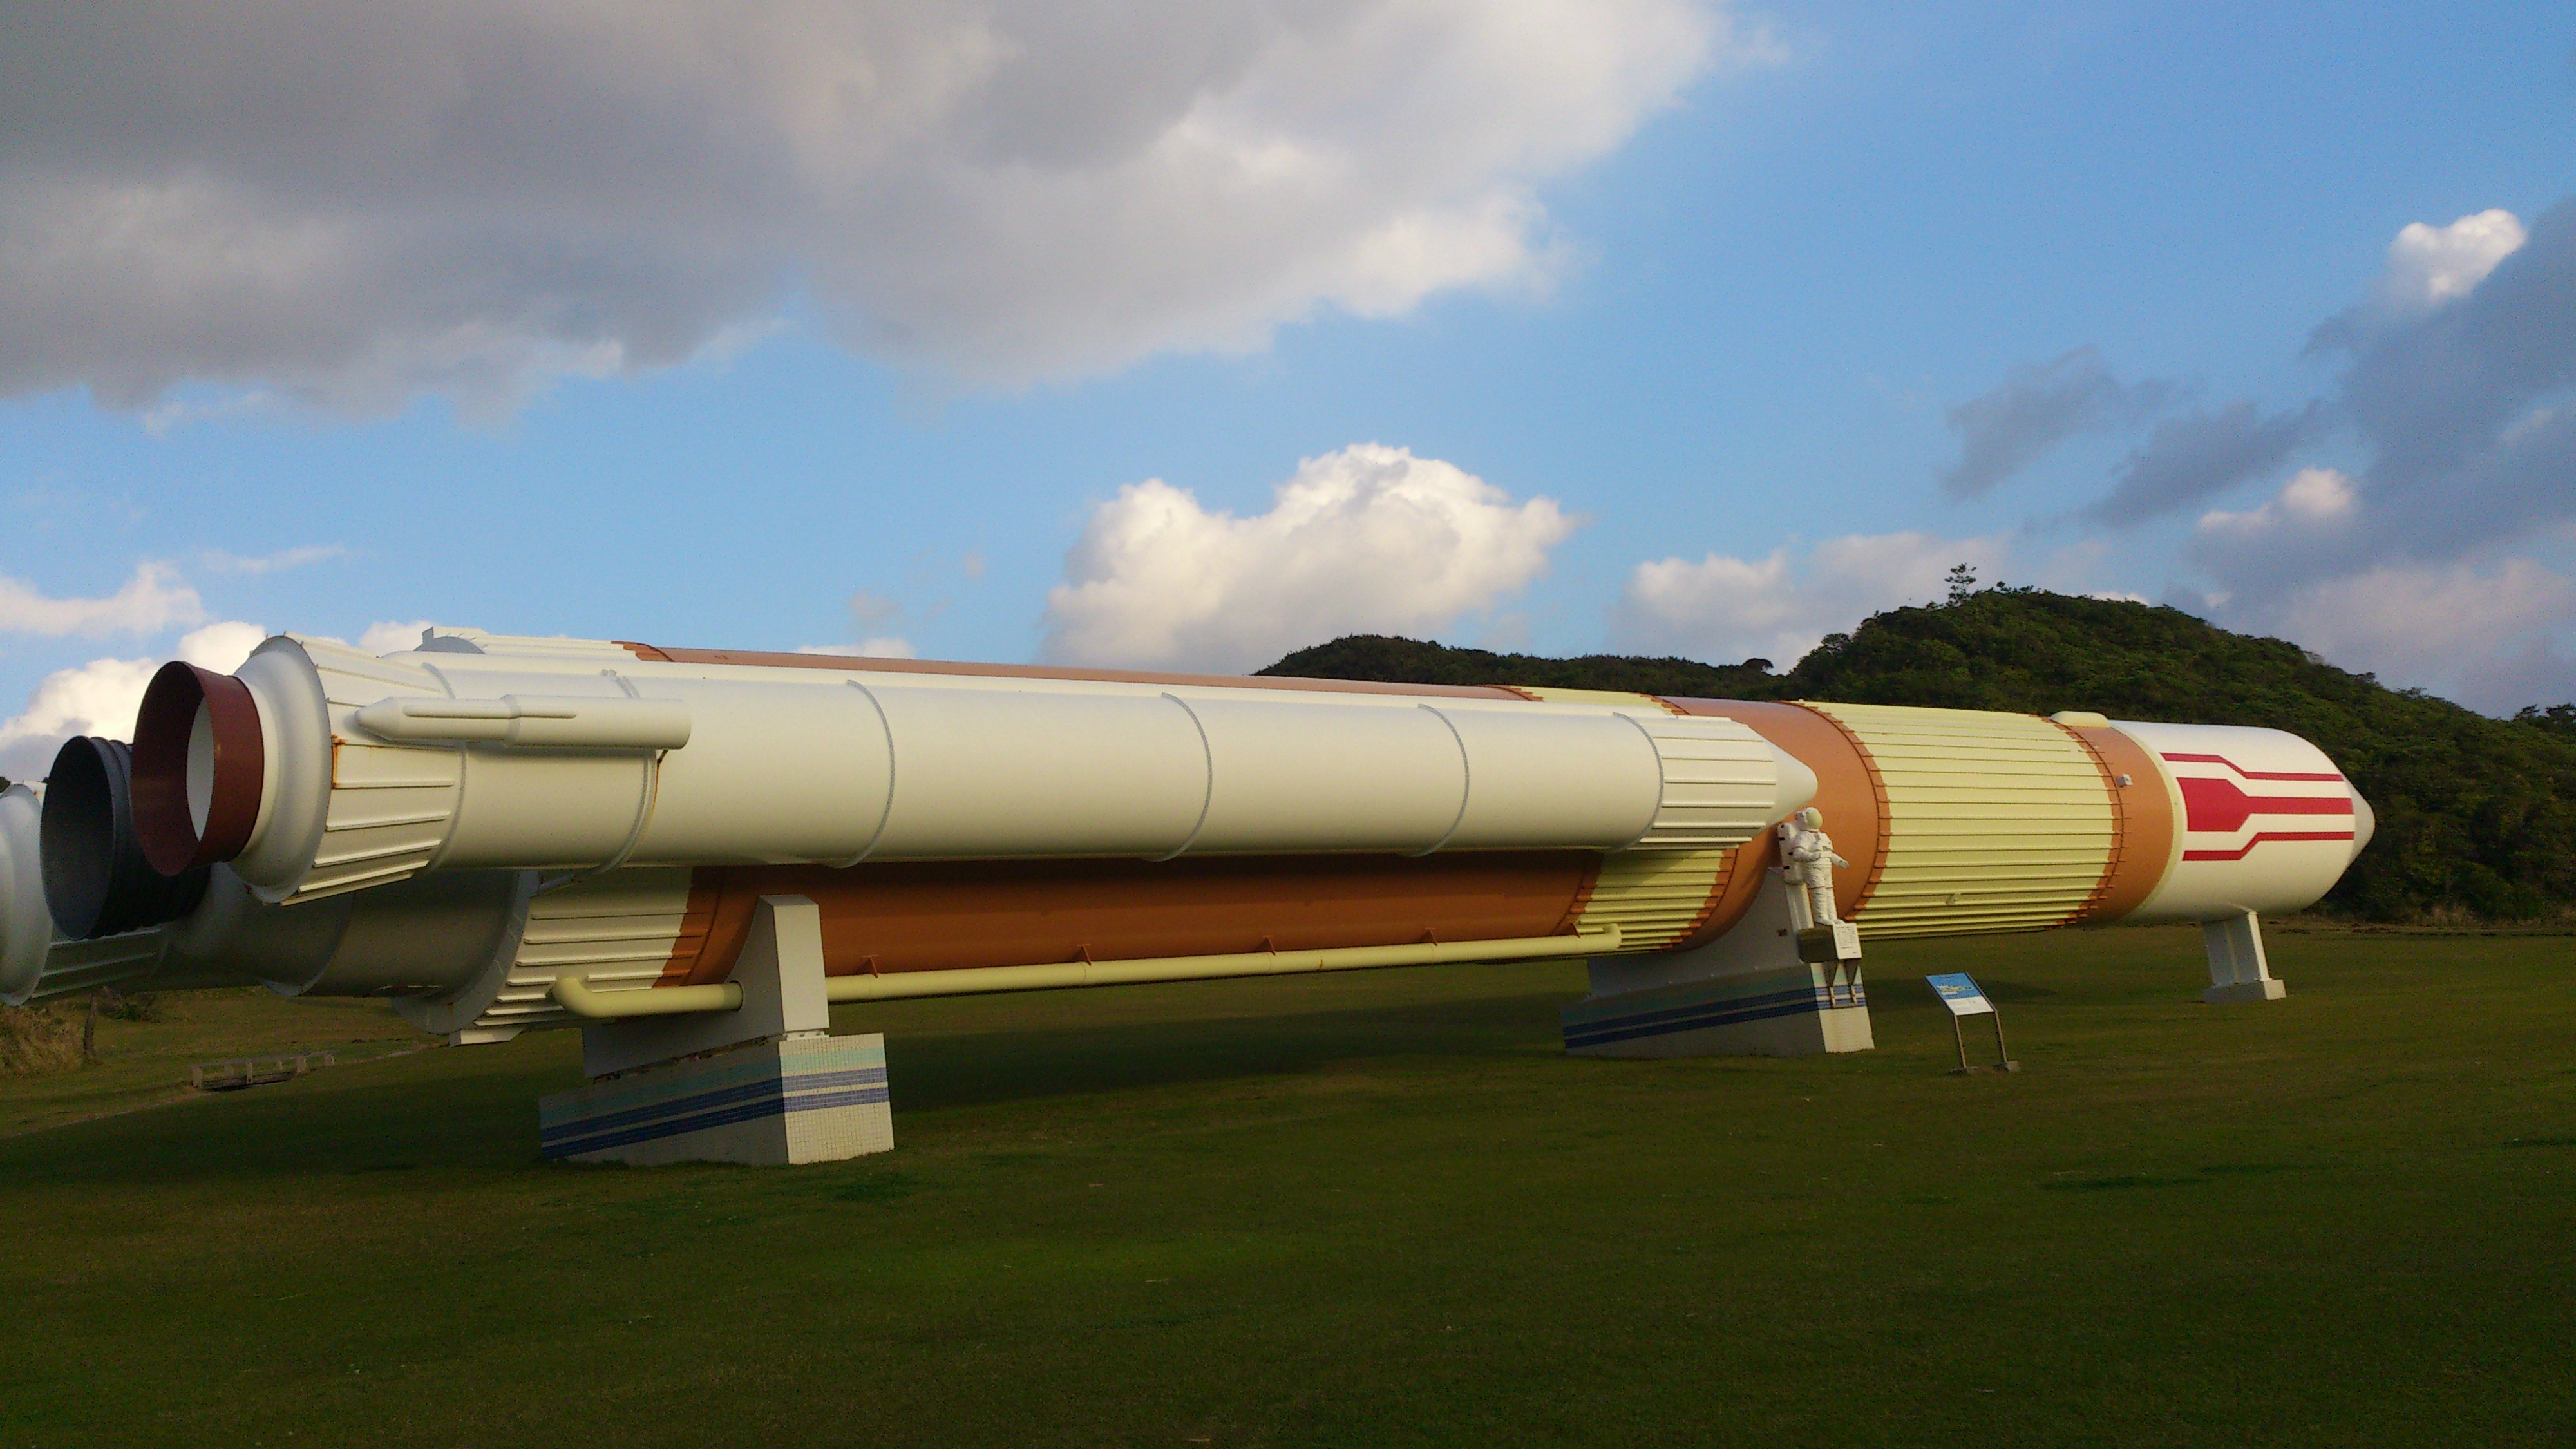 2012年12月。僕は種子島を一人で旅した：ロケットのオブジェクト①